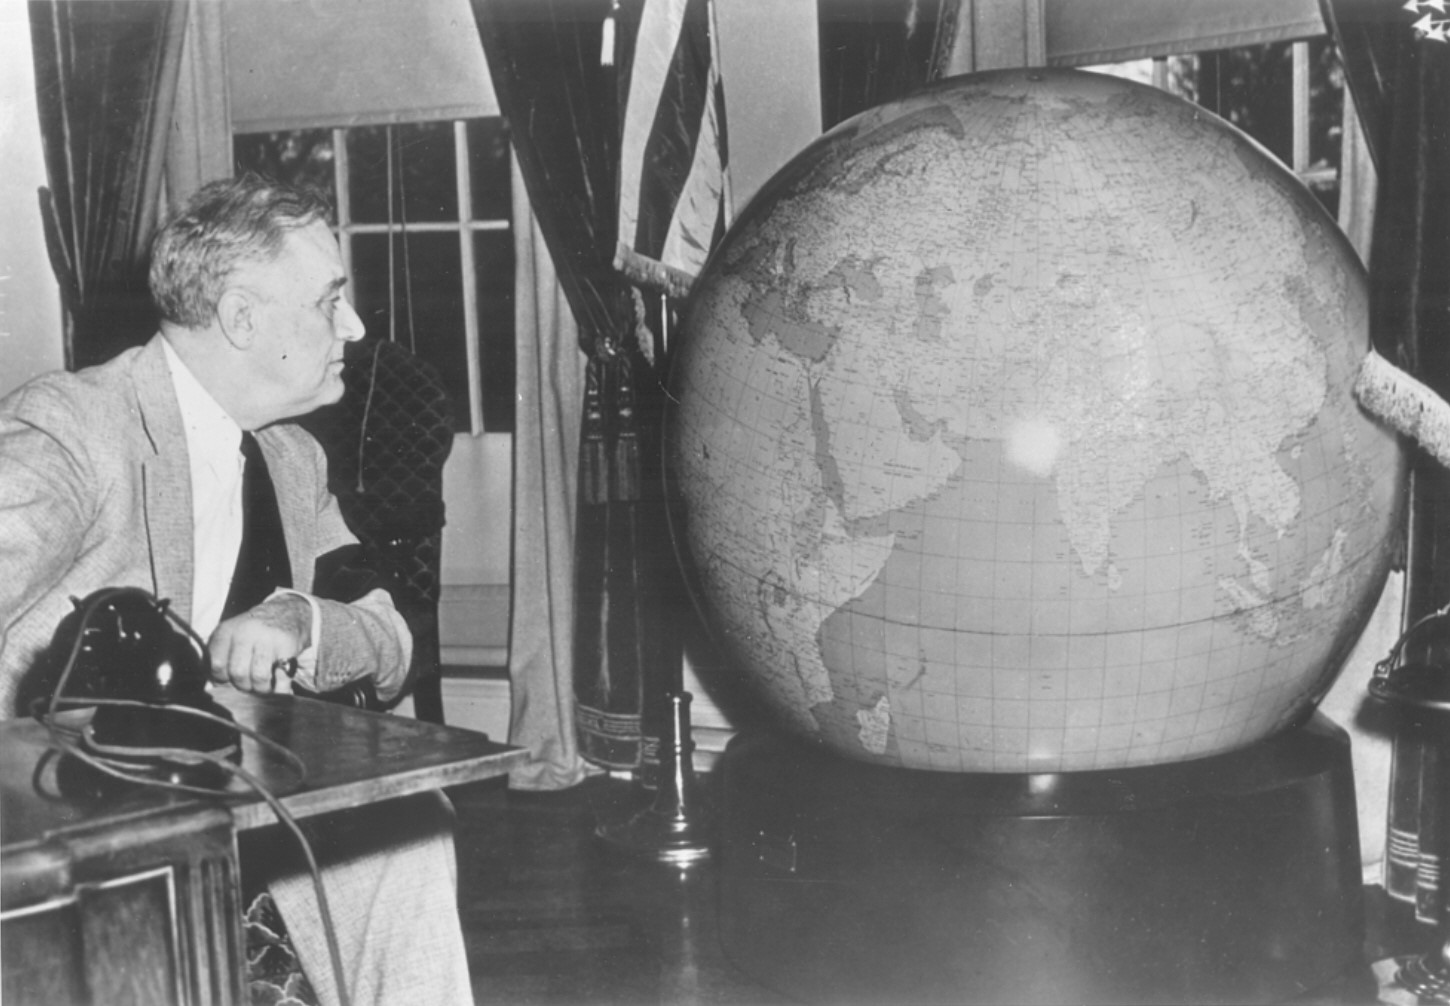 The President’s Globe, world maps online